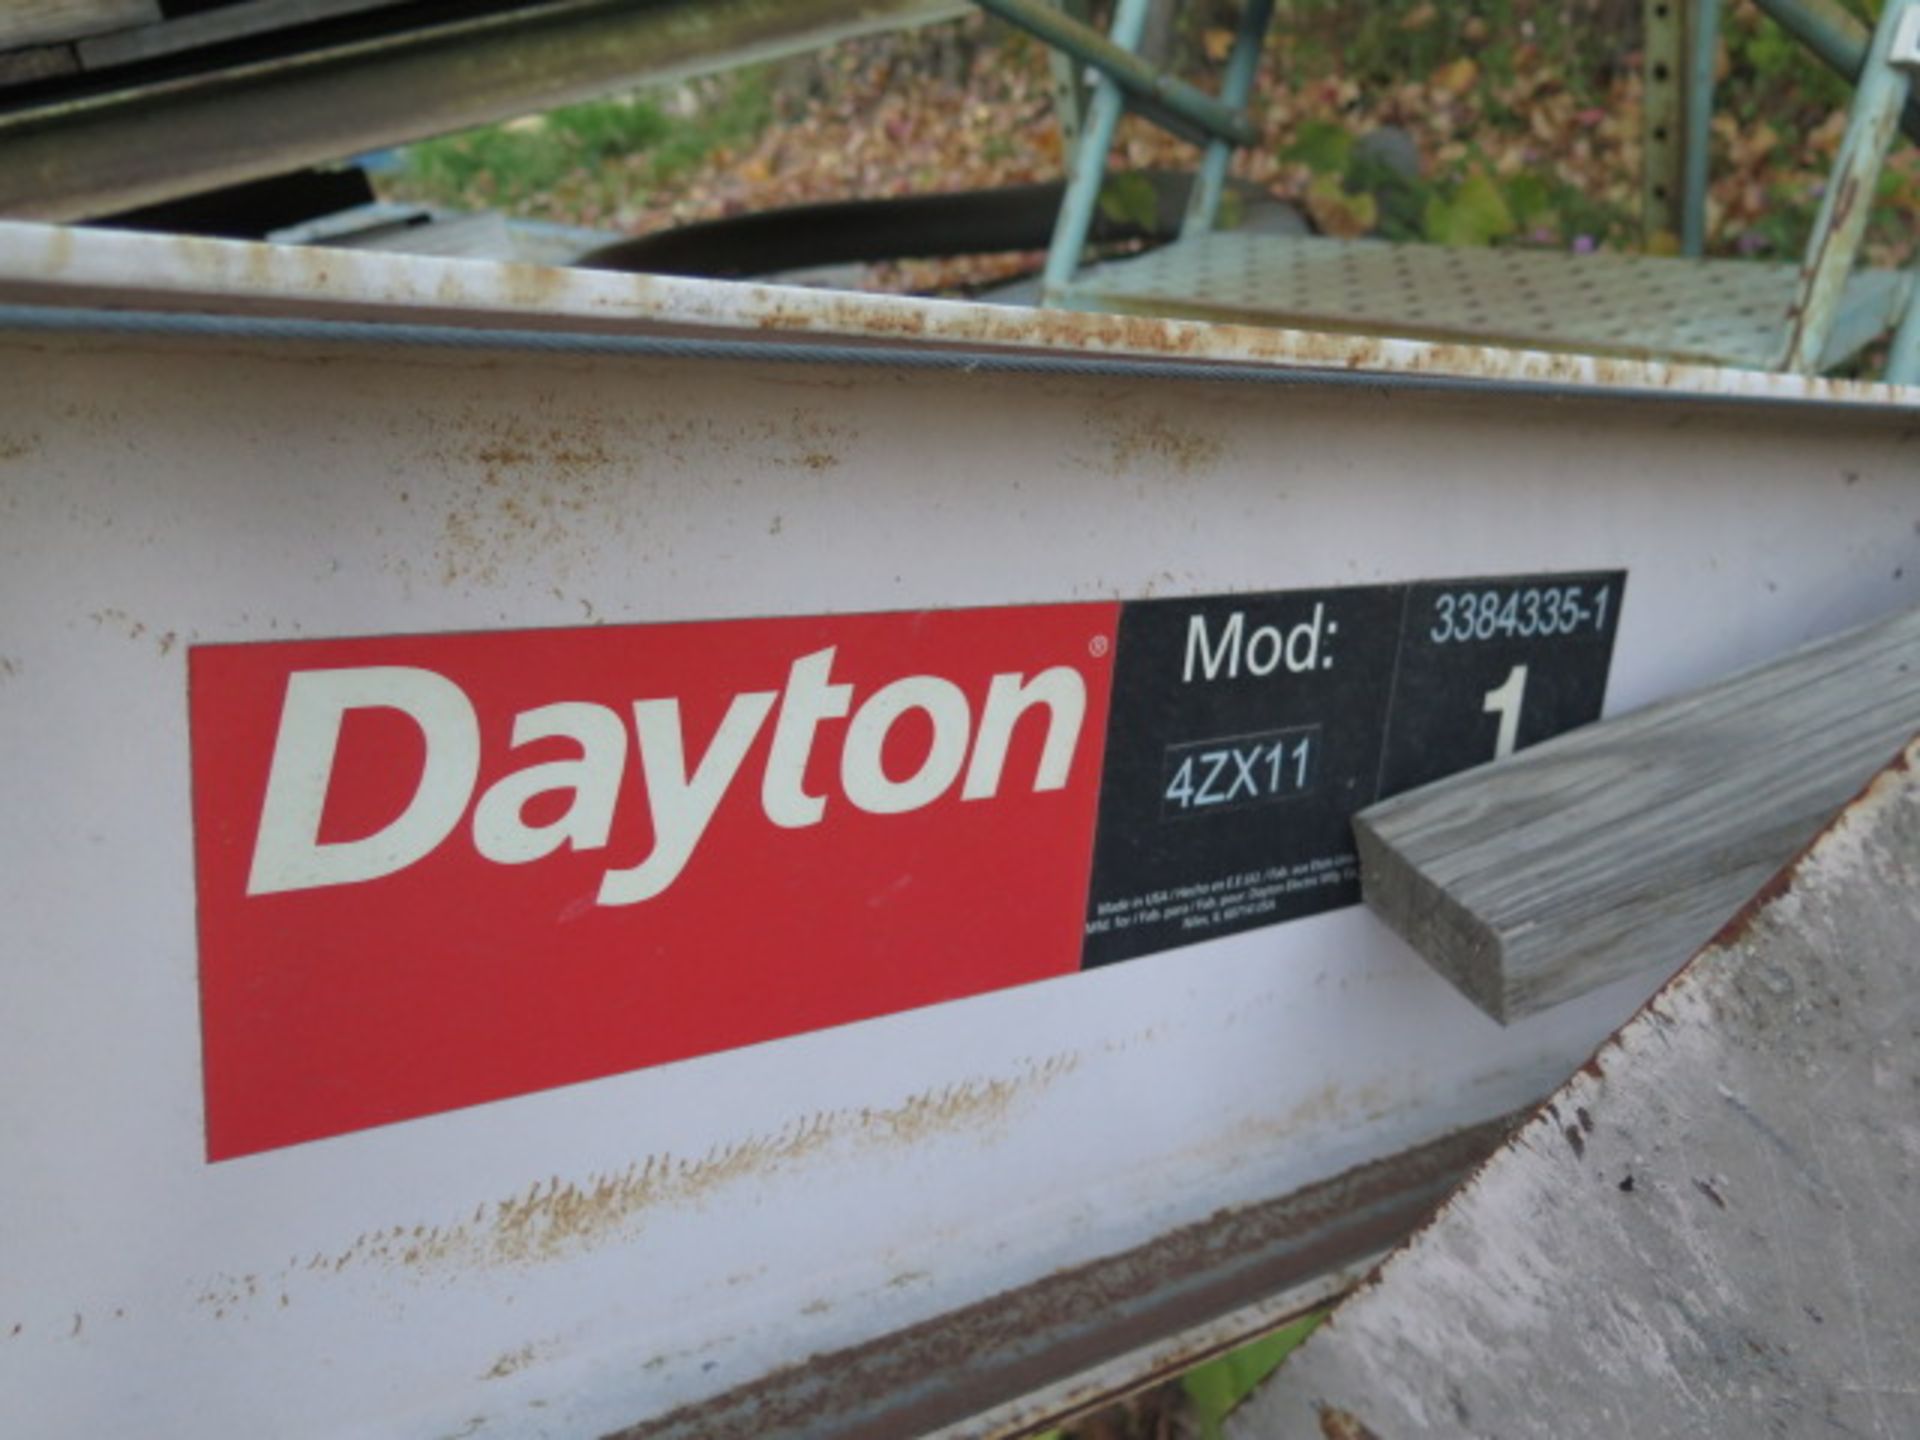 Dayton mdl. 4ZX11 1-To Cap Floor Mounted Jib w/ Pneumatic Hoist (SOLD AS-IS - NO WARRANTY) - Bild 5 aus 5